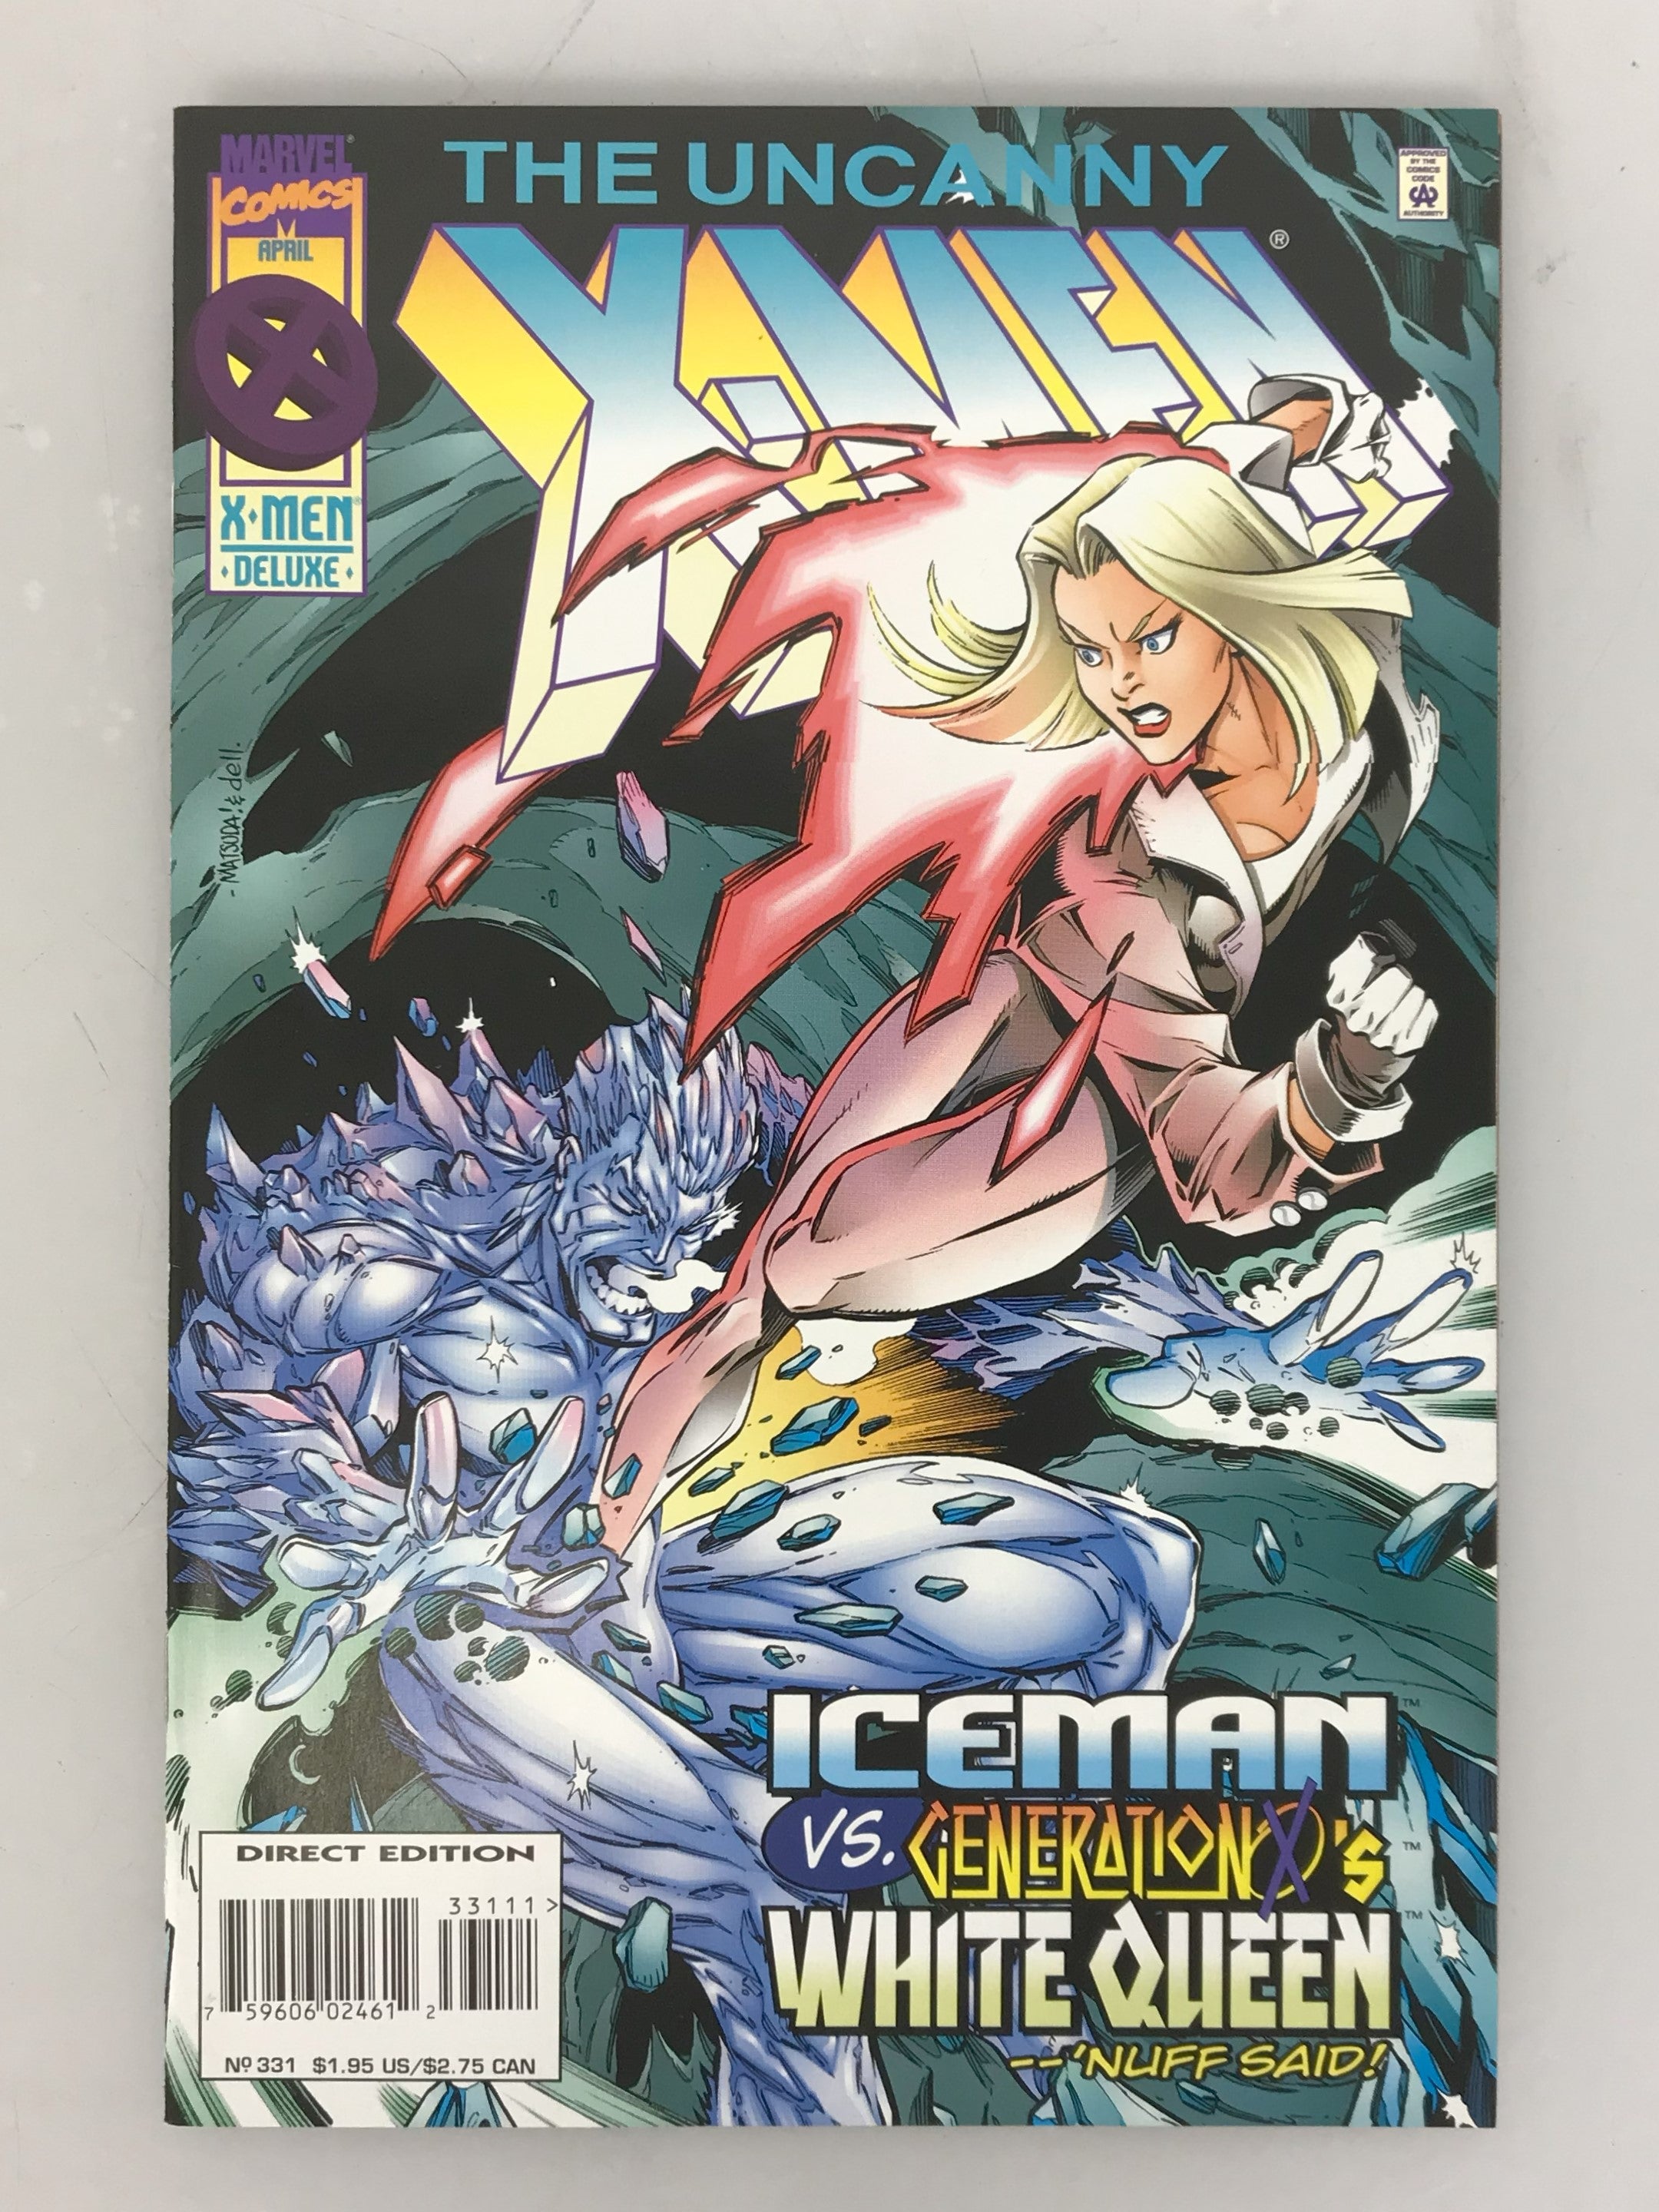 The Uncanny X-Men Vol. 1 No. 331 1996